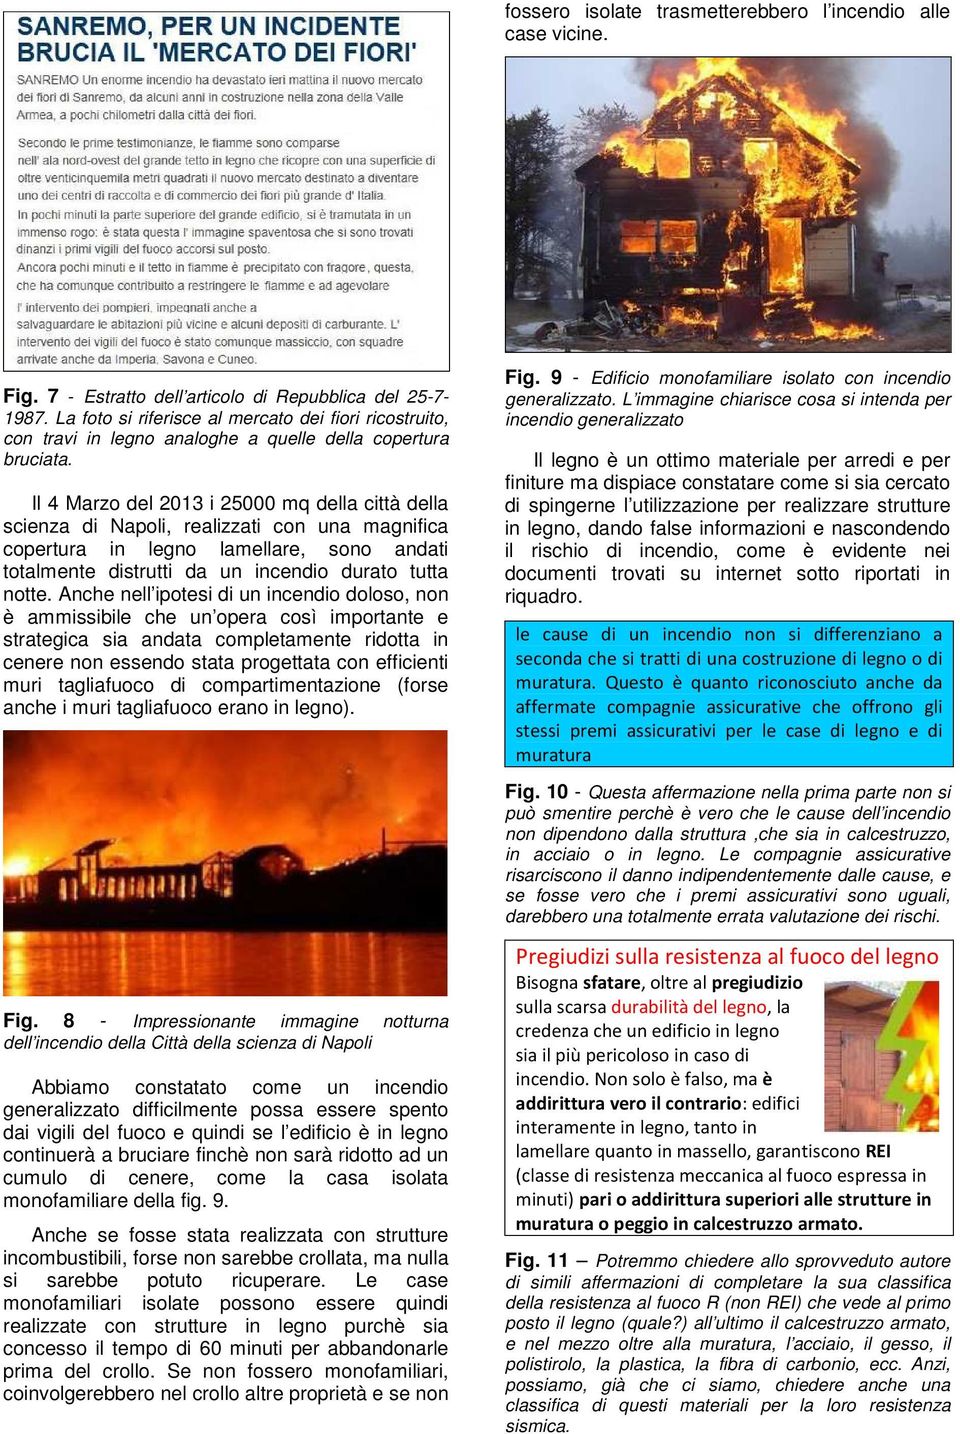 Il 4 Marzo del 2013 i 25000 mq della città della scienza di Napoli, realizzati con una magnifica copertura in legno lamellare, sono andati totalmente distrutti da un incendio durato tutta notte.